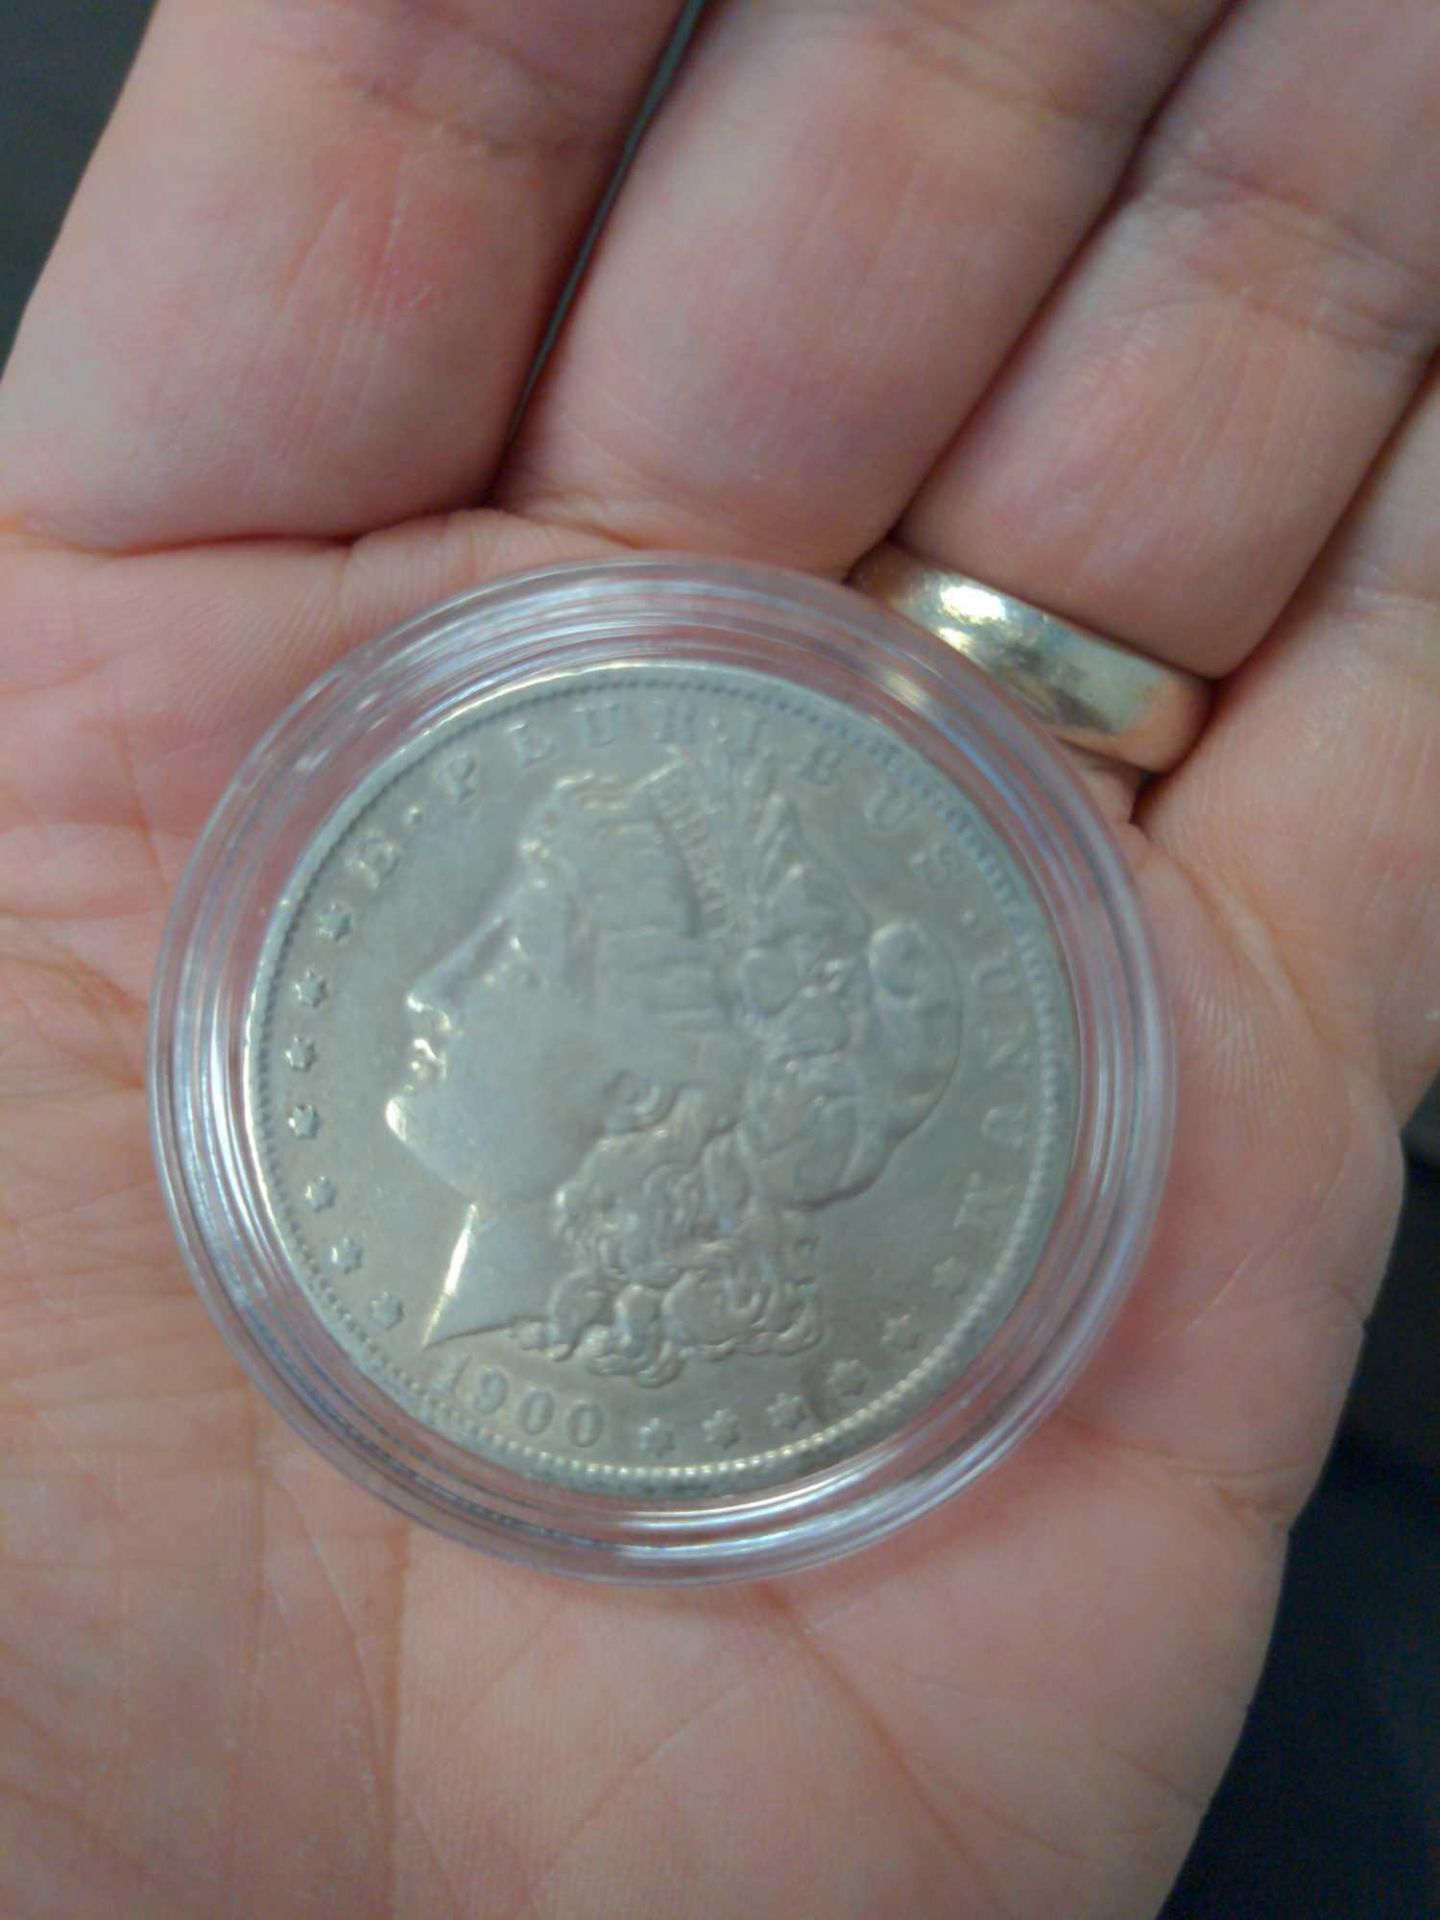 1900 Morgan Dollar - Image 4 of 4